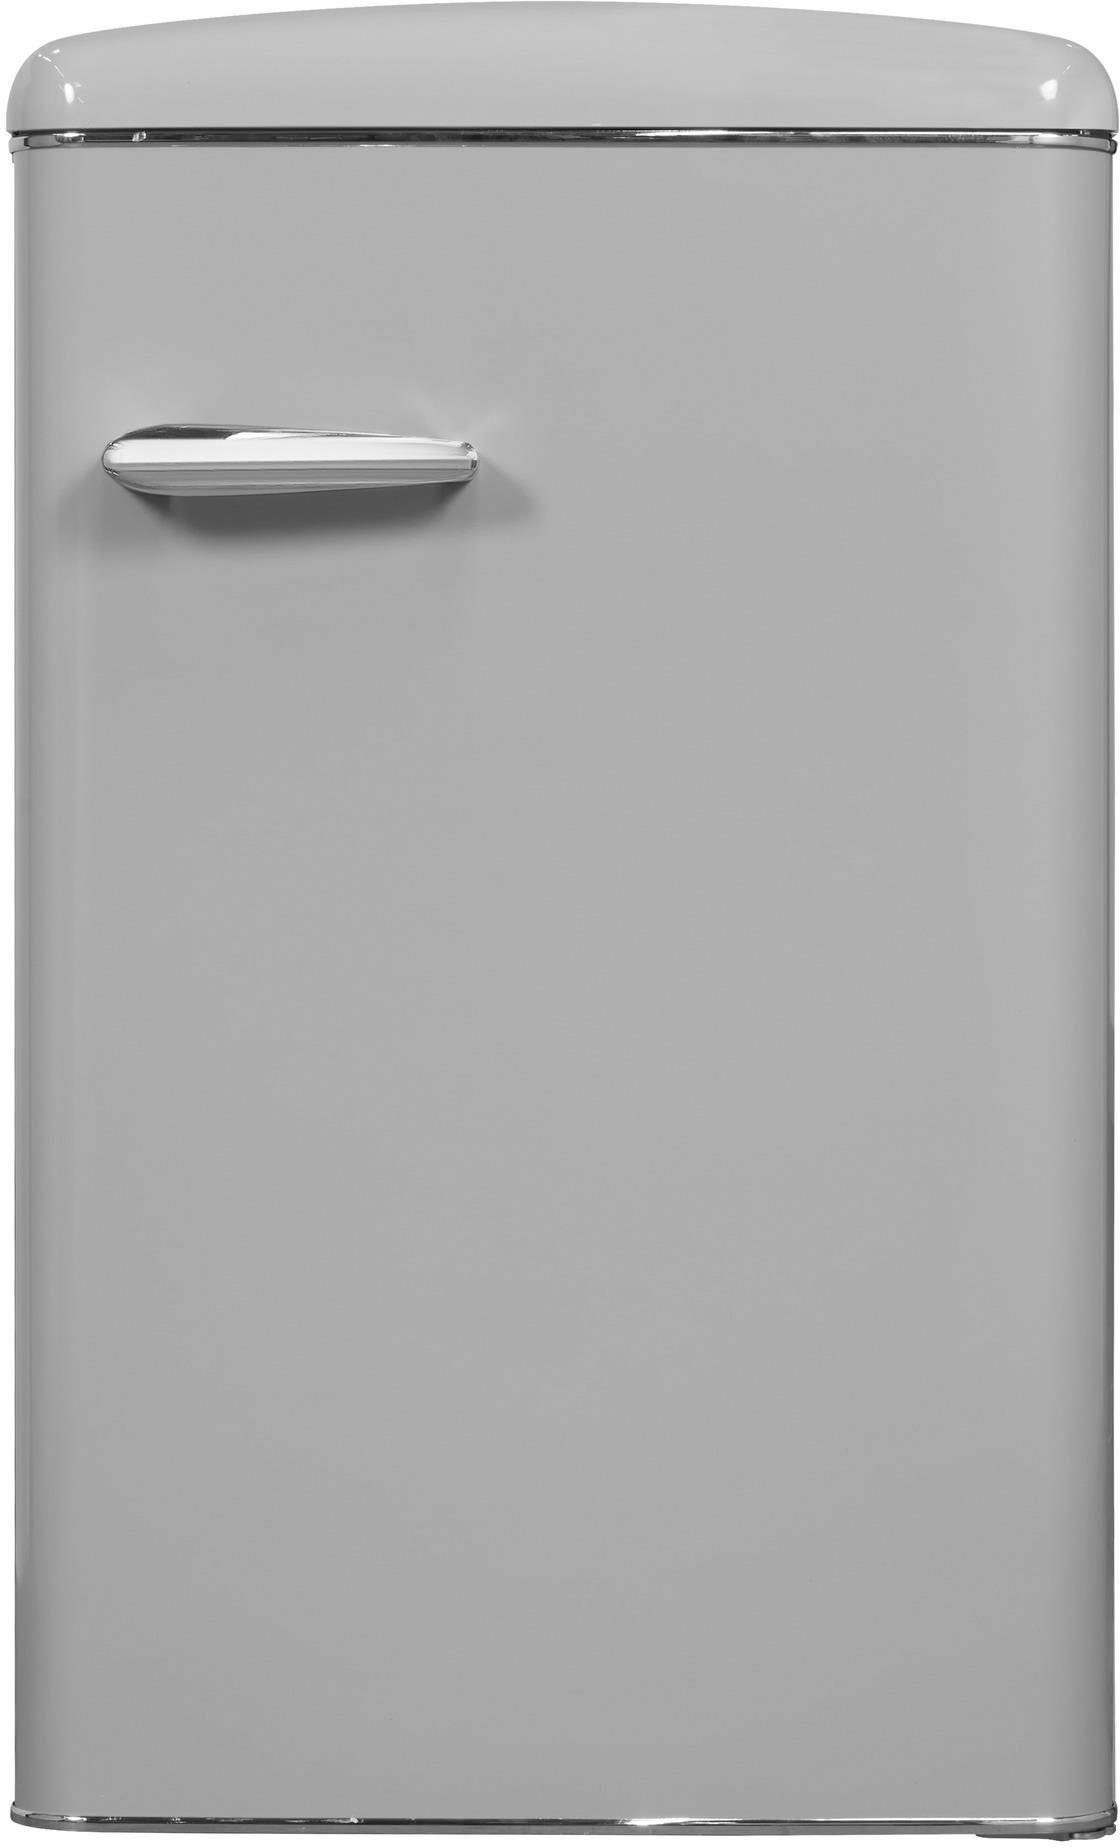 55 grau, cm breit exquisit Kühlschrank cm RKS120-V-H-160F hoch, 89,5